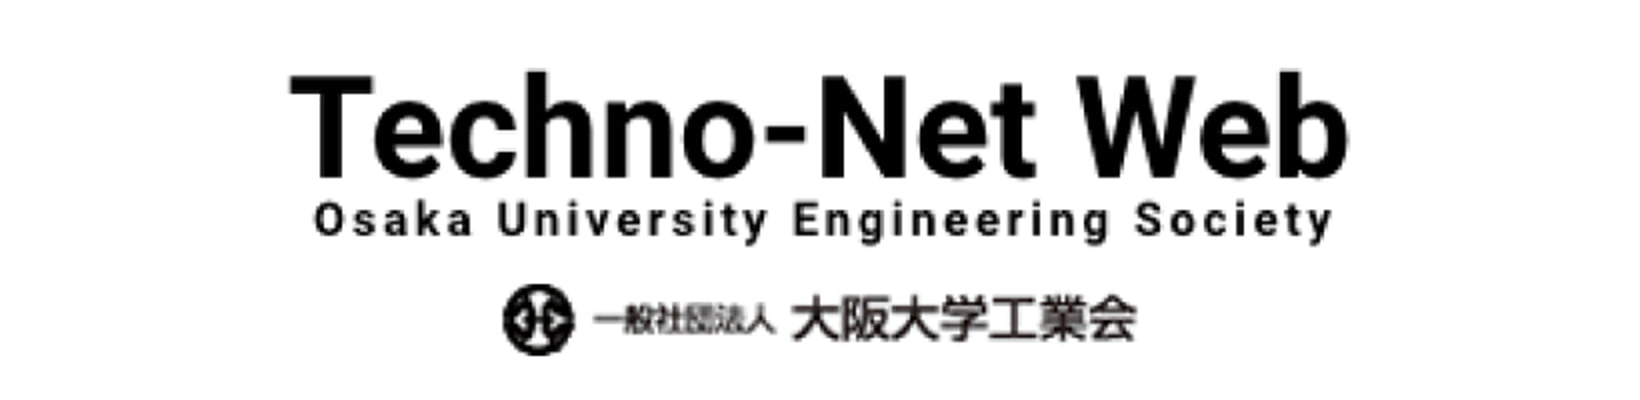 Techno-Net Web